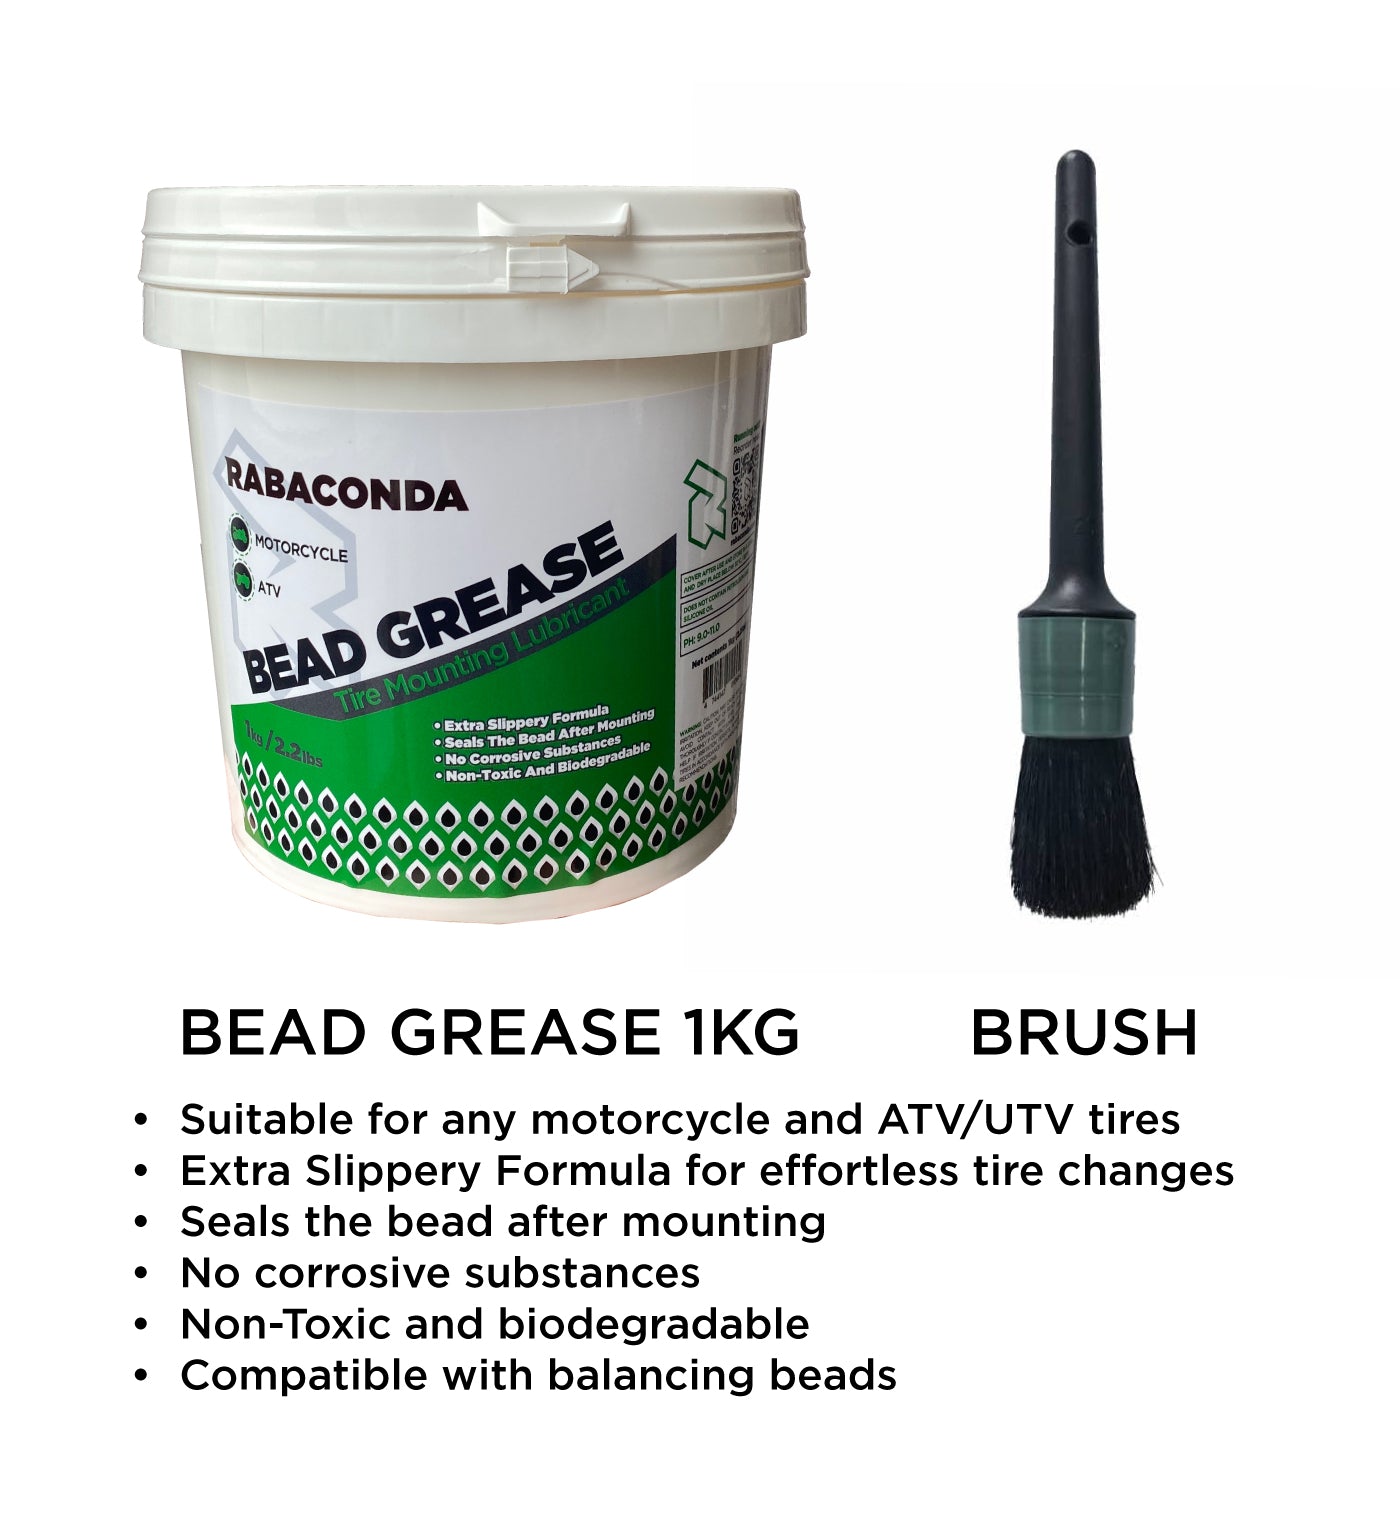 Starter-kit-Bead-grease-and-brush.jpg